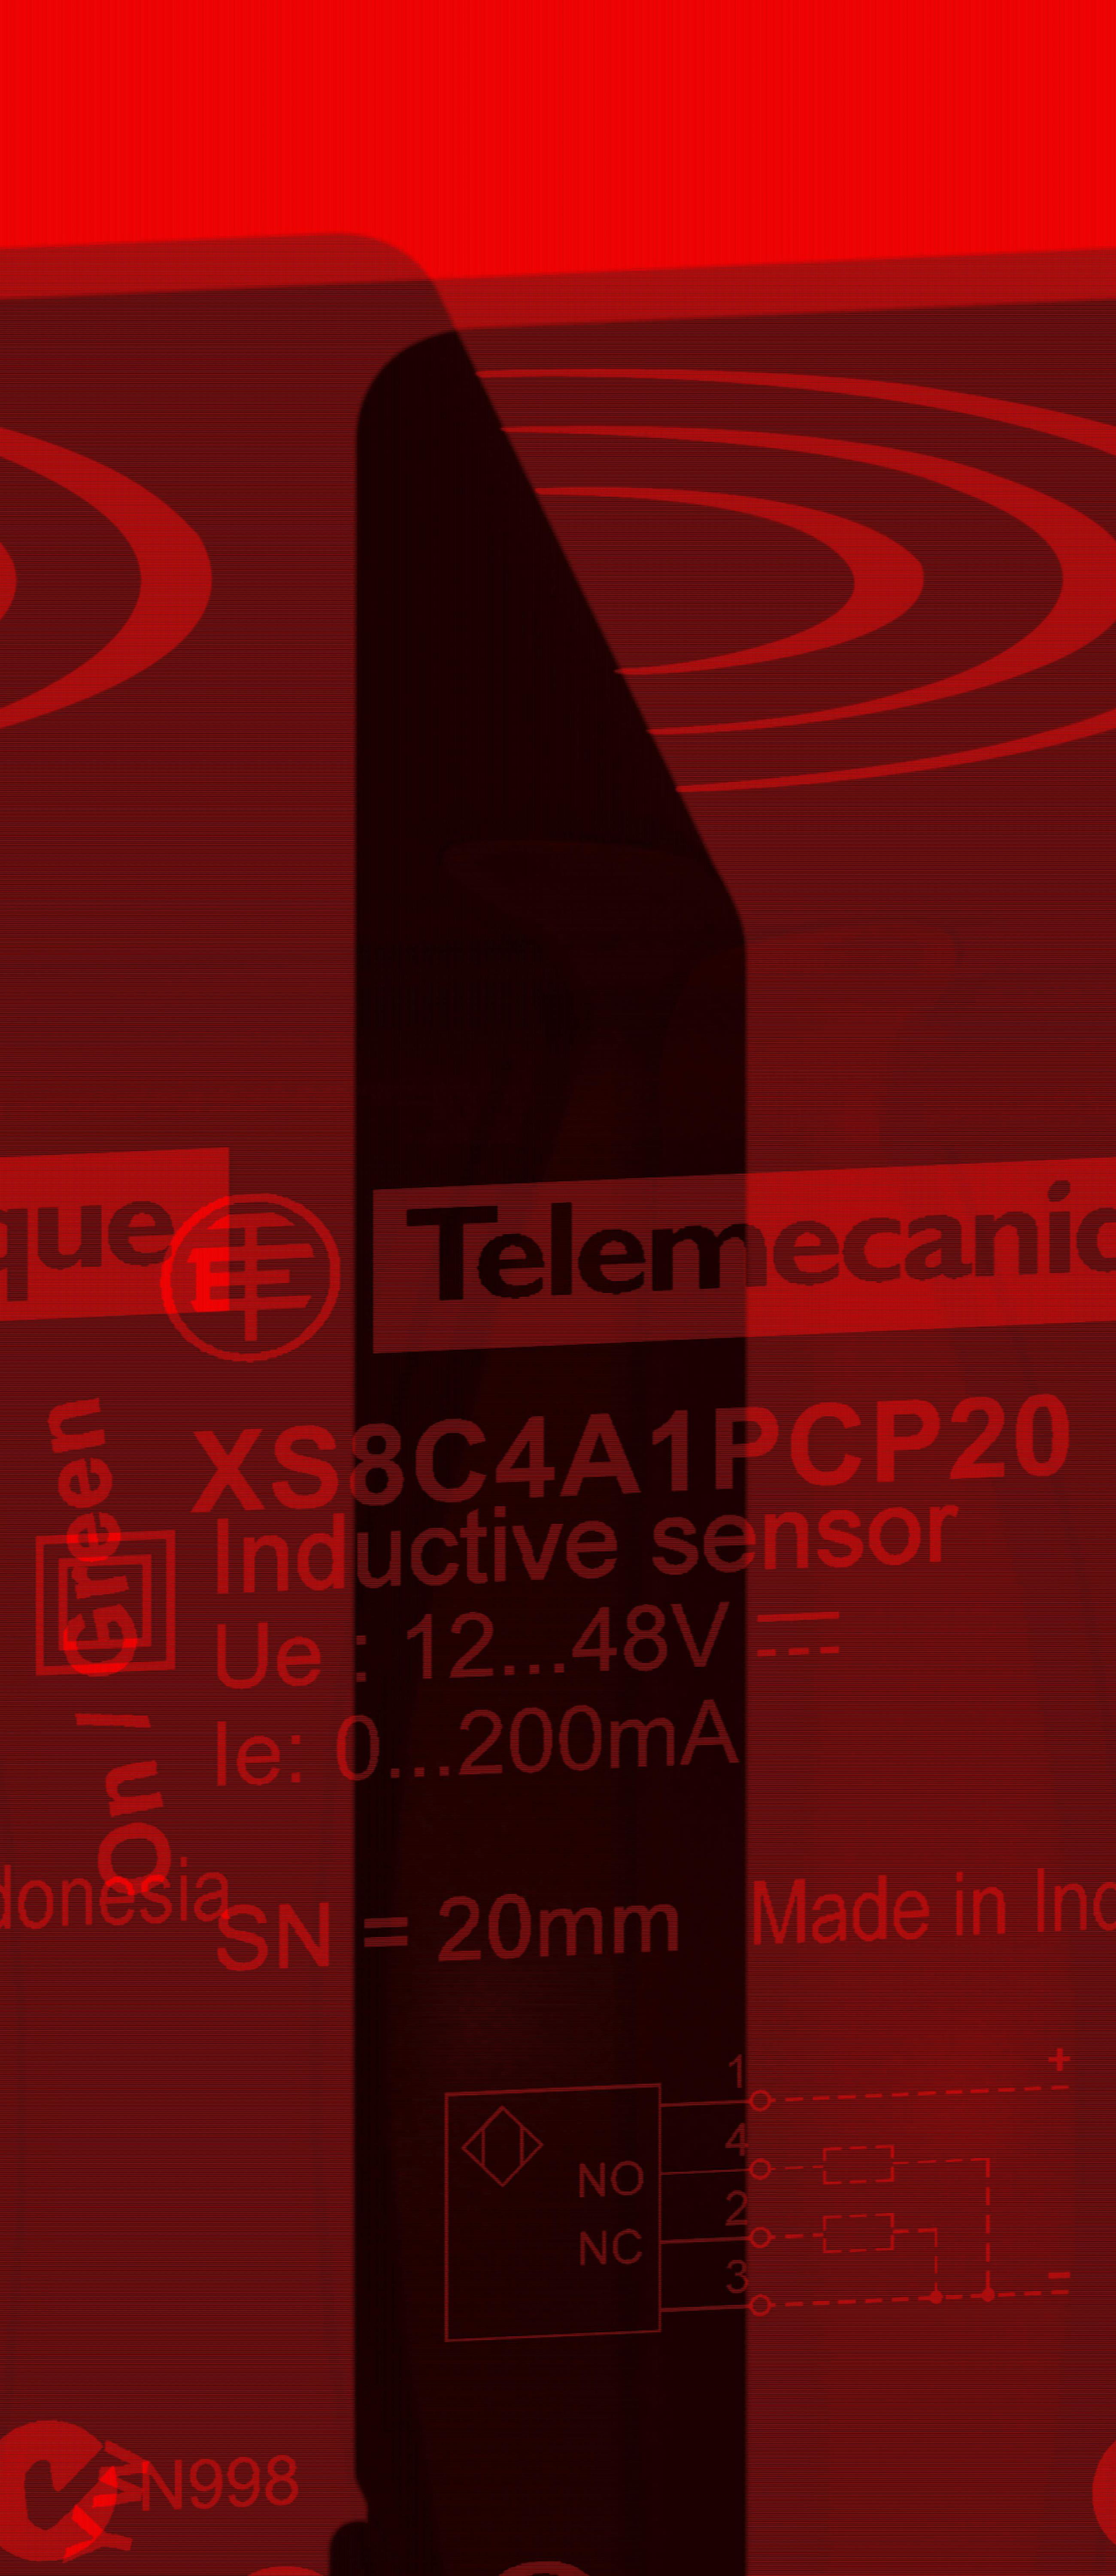 Telemecanique - XS8C4A1PCP20 Ind.giv.40X40X117 Sn=20mm PNP